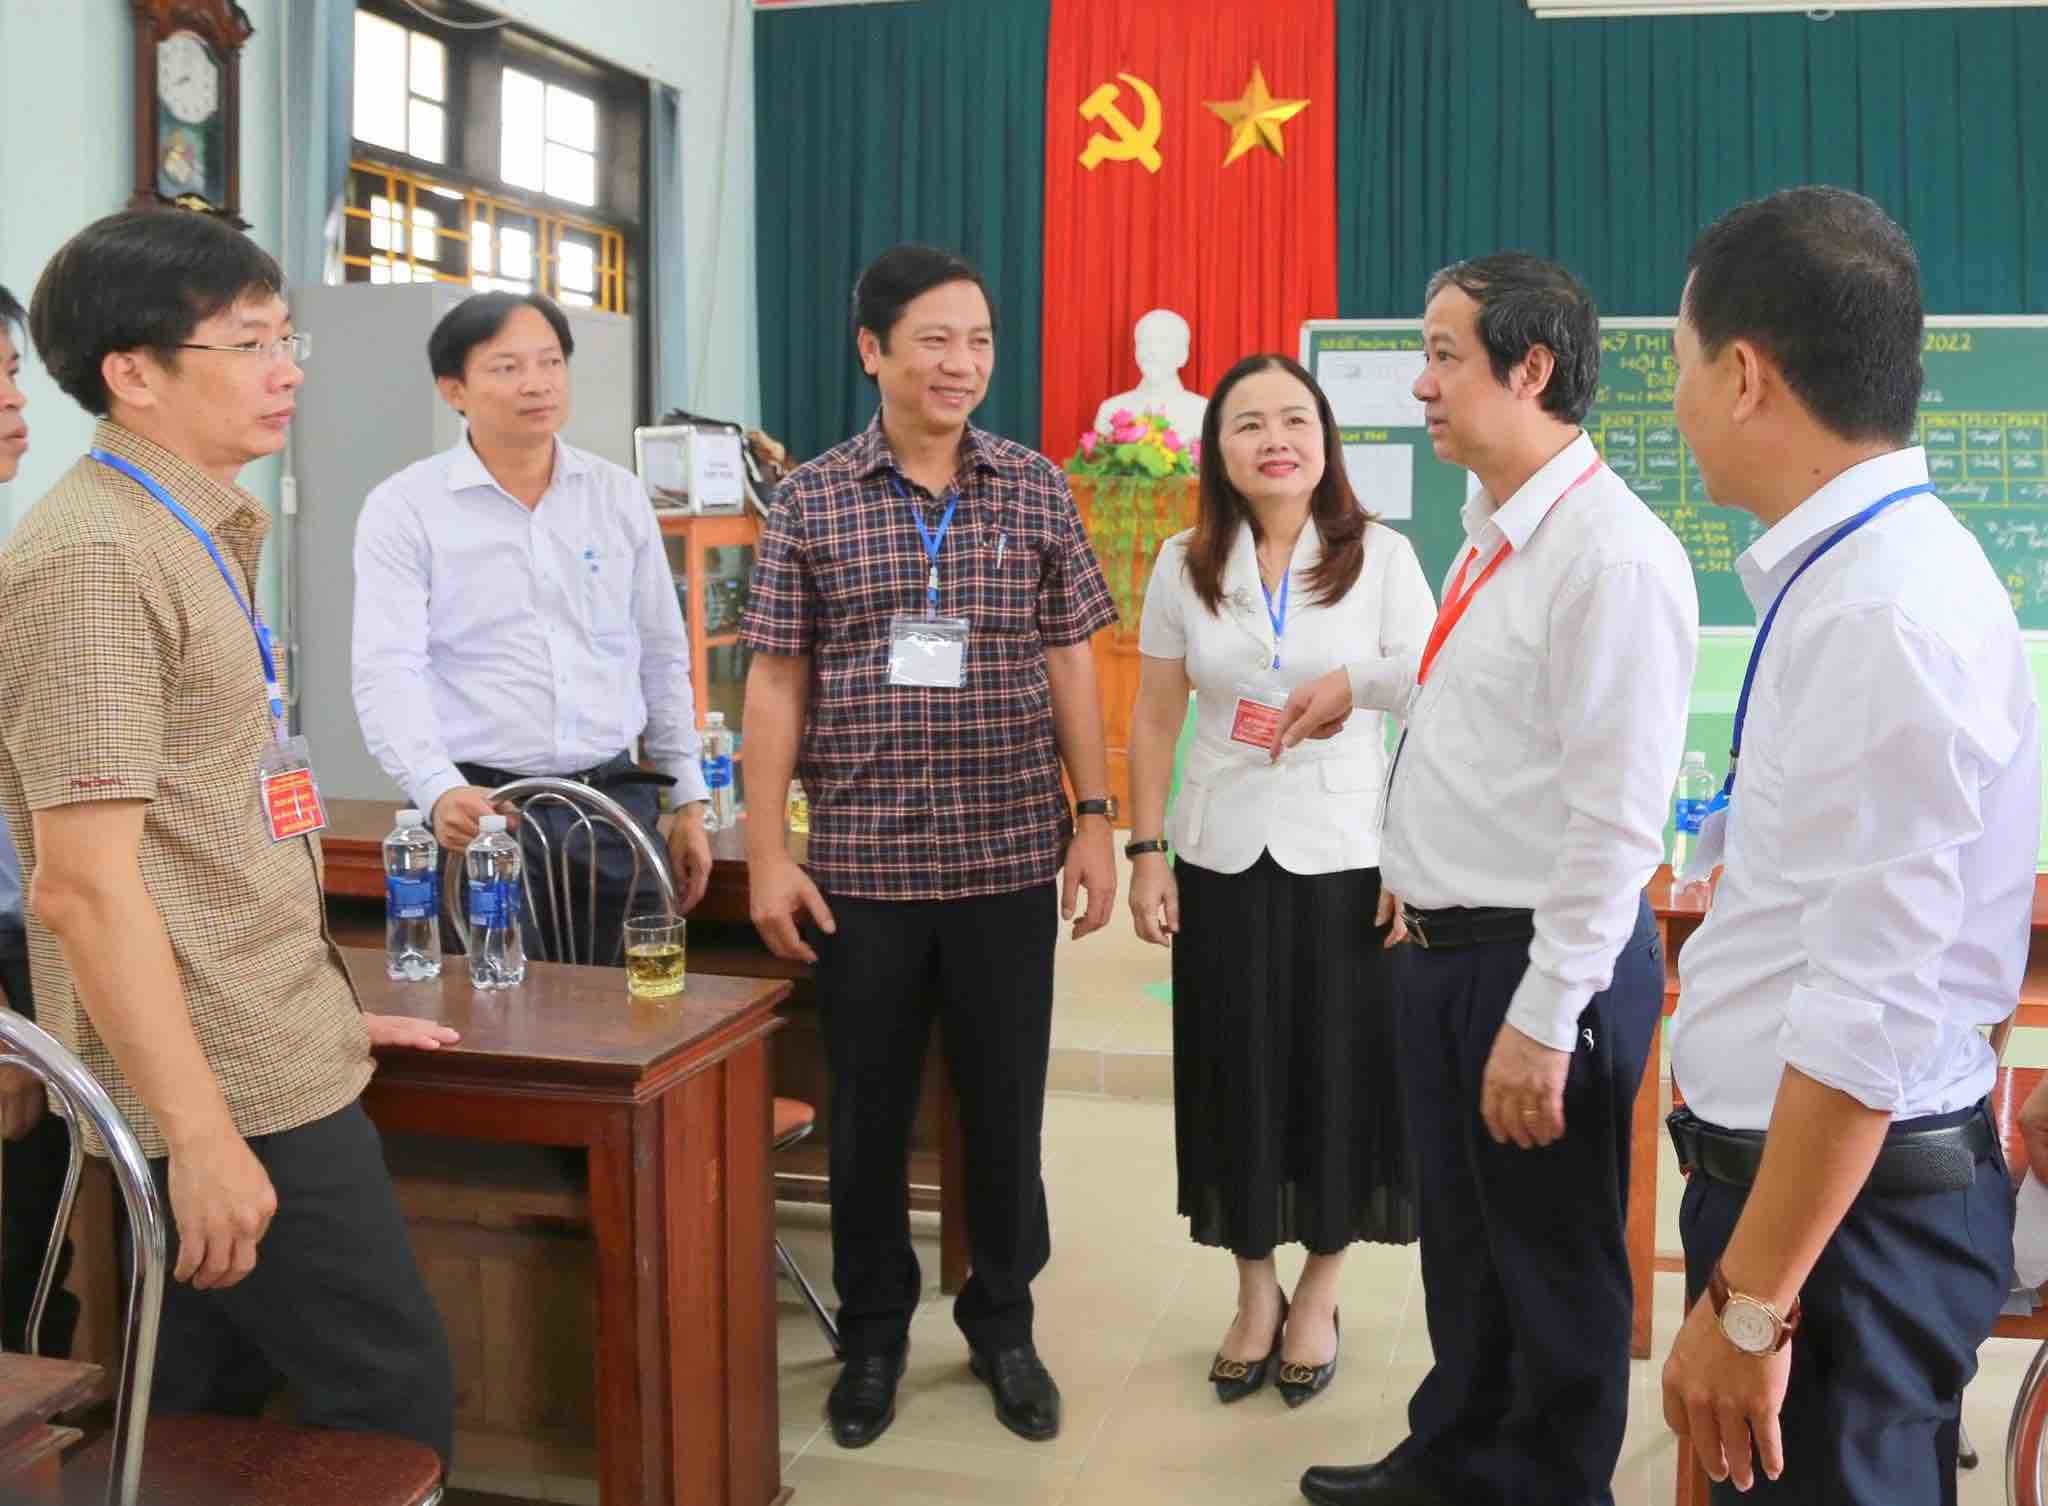 Bộ trưởng Nguyễn Kim Sơn kiểm tra tổ chức thi tốt nghiệp THPT tại tỉnh Quảng Trị